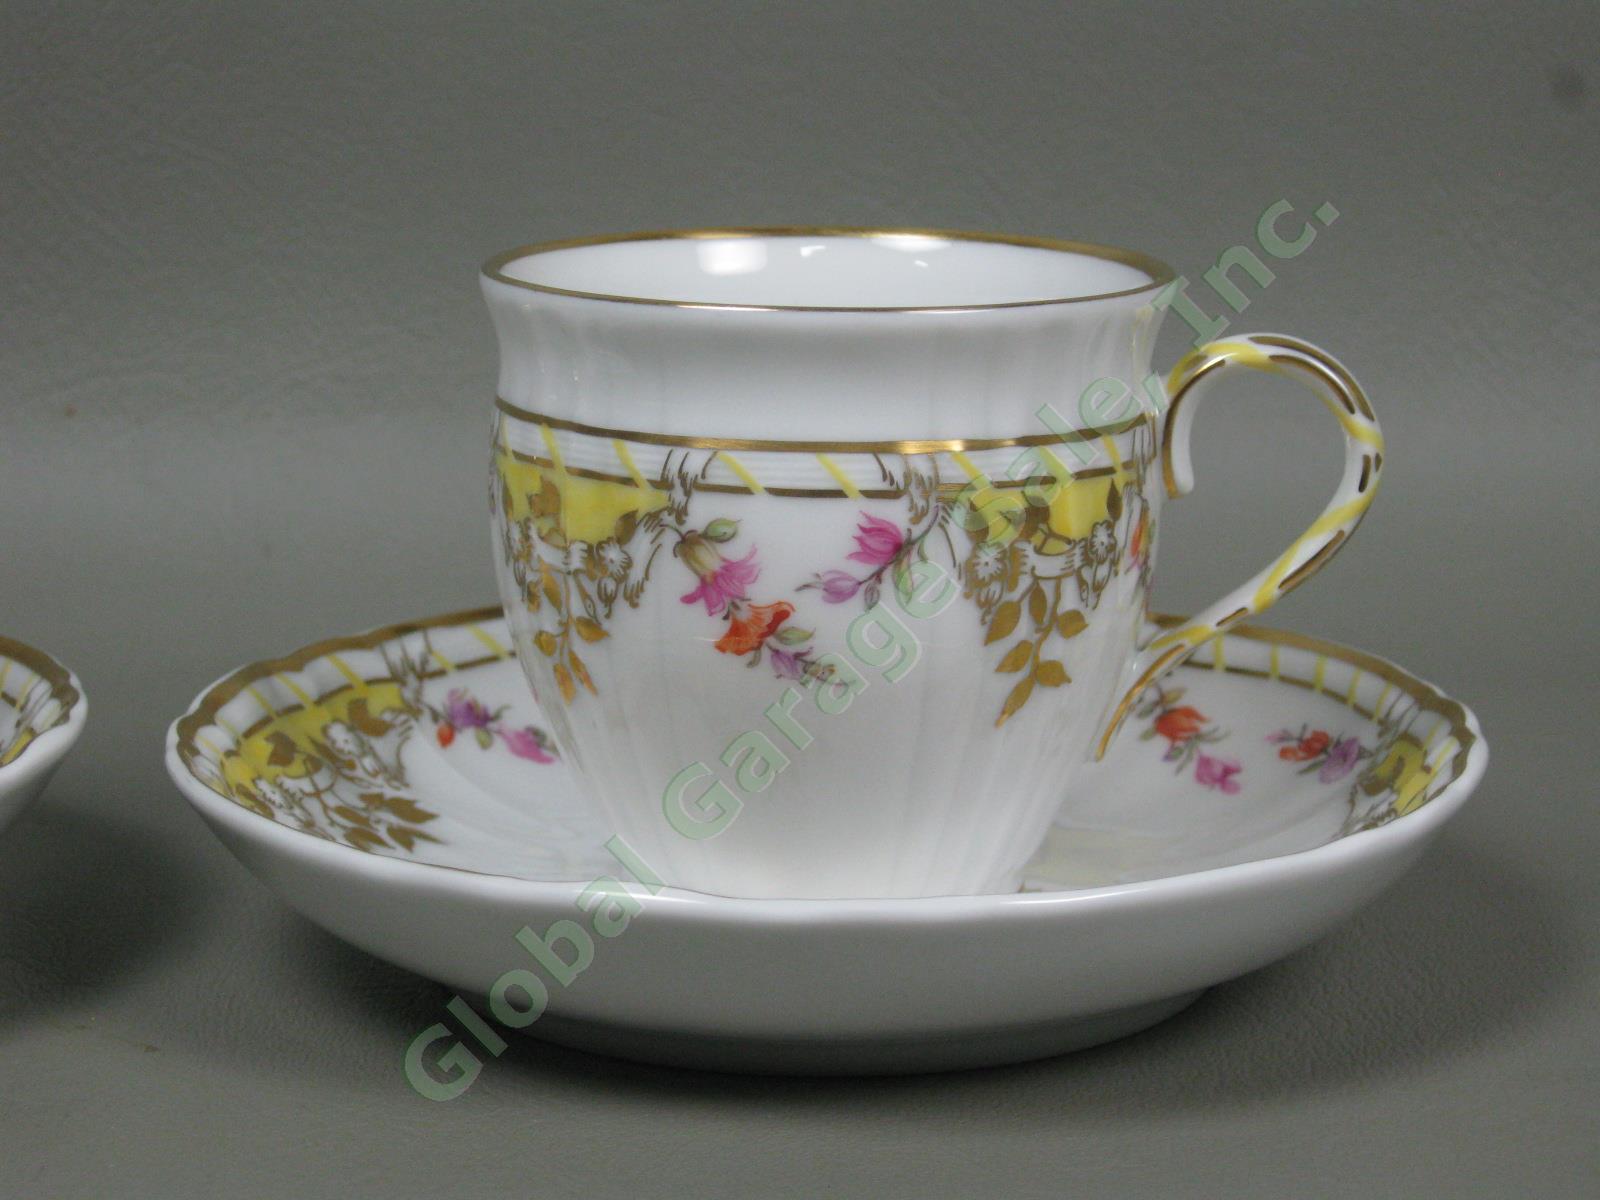 Vtg Antique KPM German Porcelain Dinner Plates Cups & Saucers Set Floral Gilt NR 11